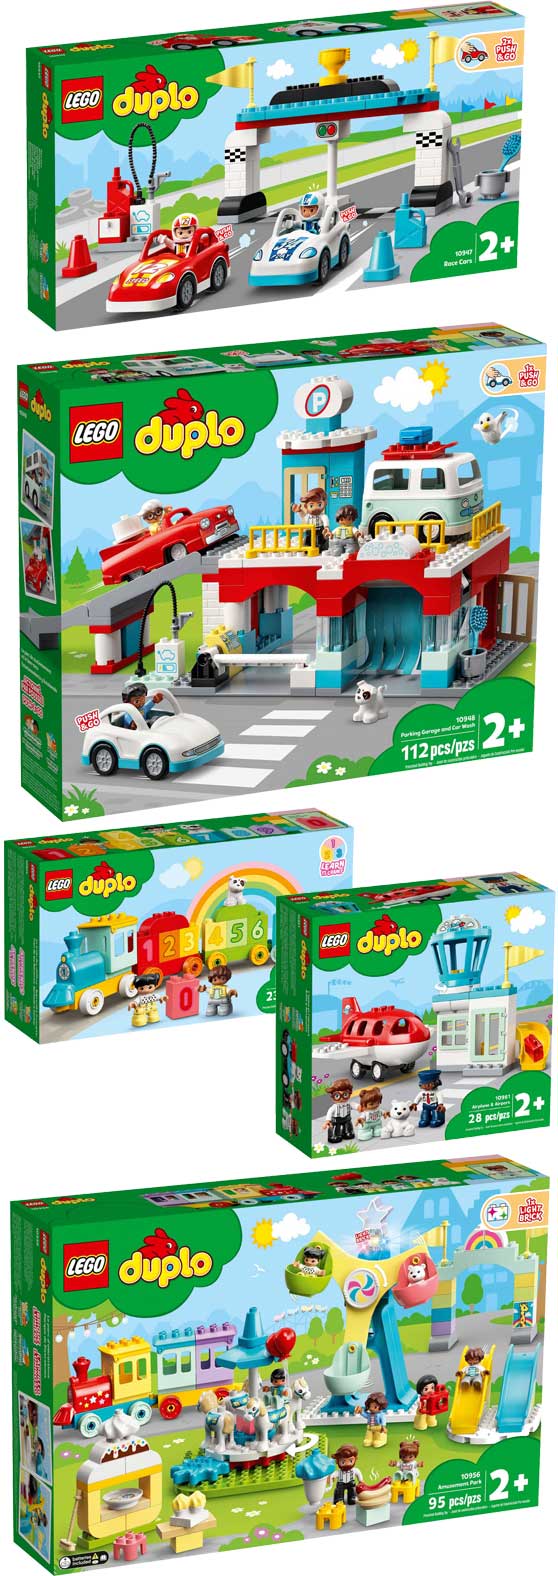 Toymania Online Lego Shop - ΝΕΑ ΣΕΤ LEGO DUPLO 2021